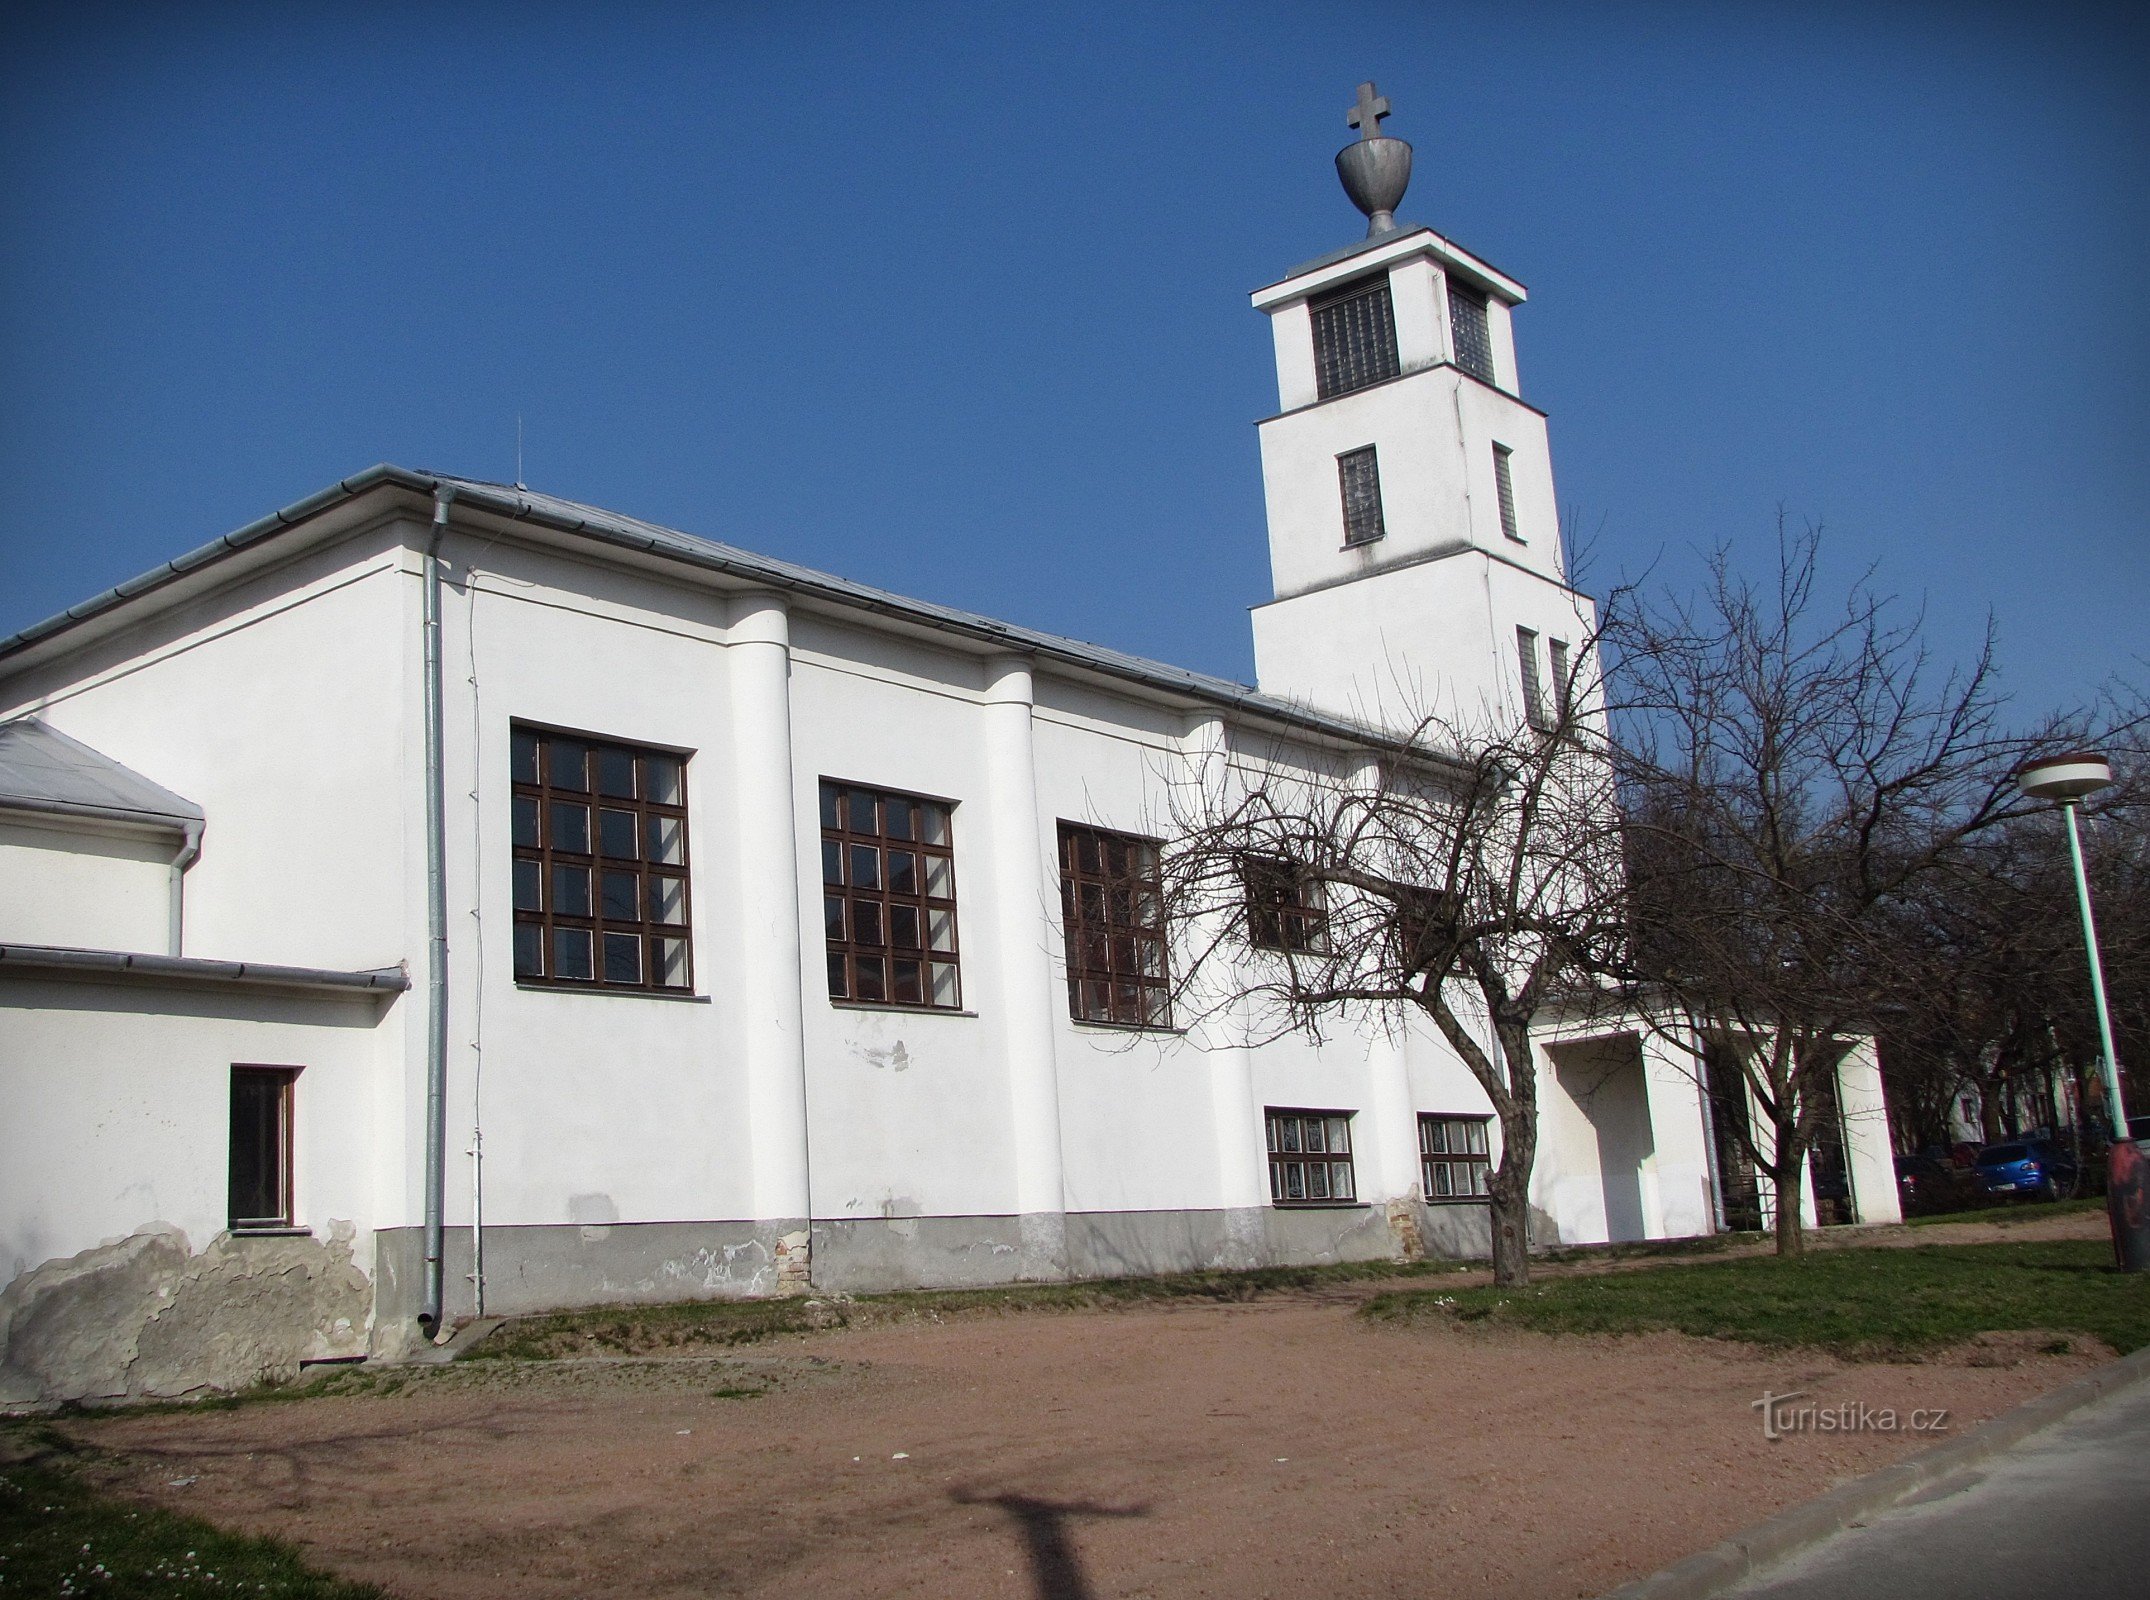 Кийов - церковь гуситской общины